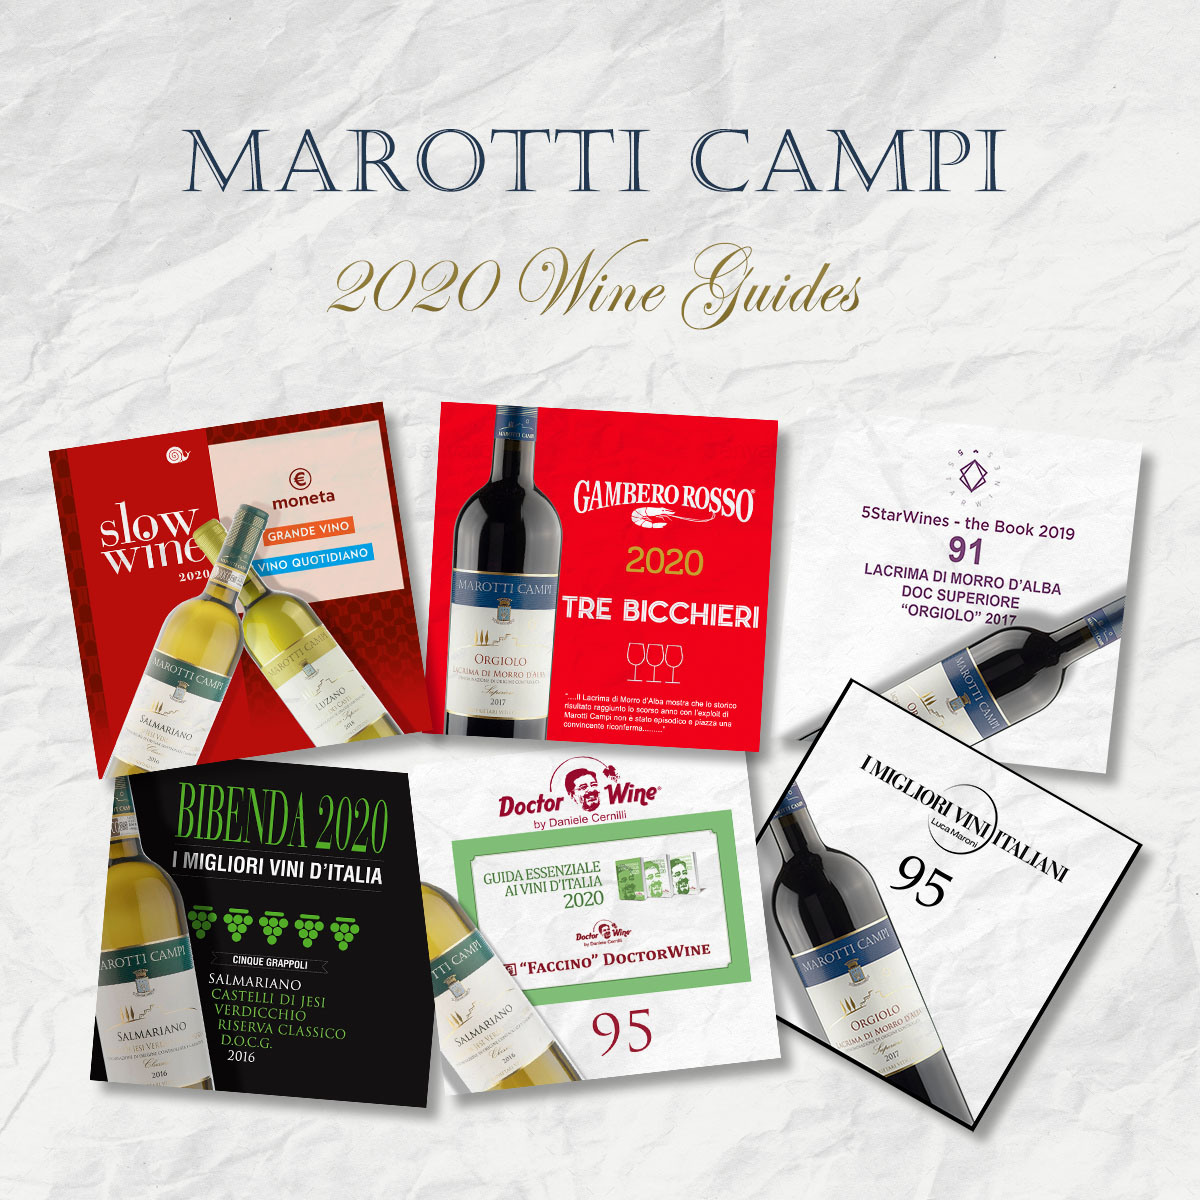 Guide 2020 Marotti Campi Lacrima e Verdicchio Tre Bicchieri Gambero Rosso, Grande Vino Slow Wine, 5 Grappoli Bibenda, 5Star wines, Faccino 95 Doctor Wine Cernilli